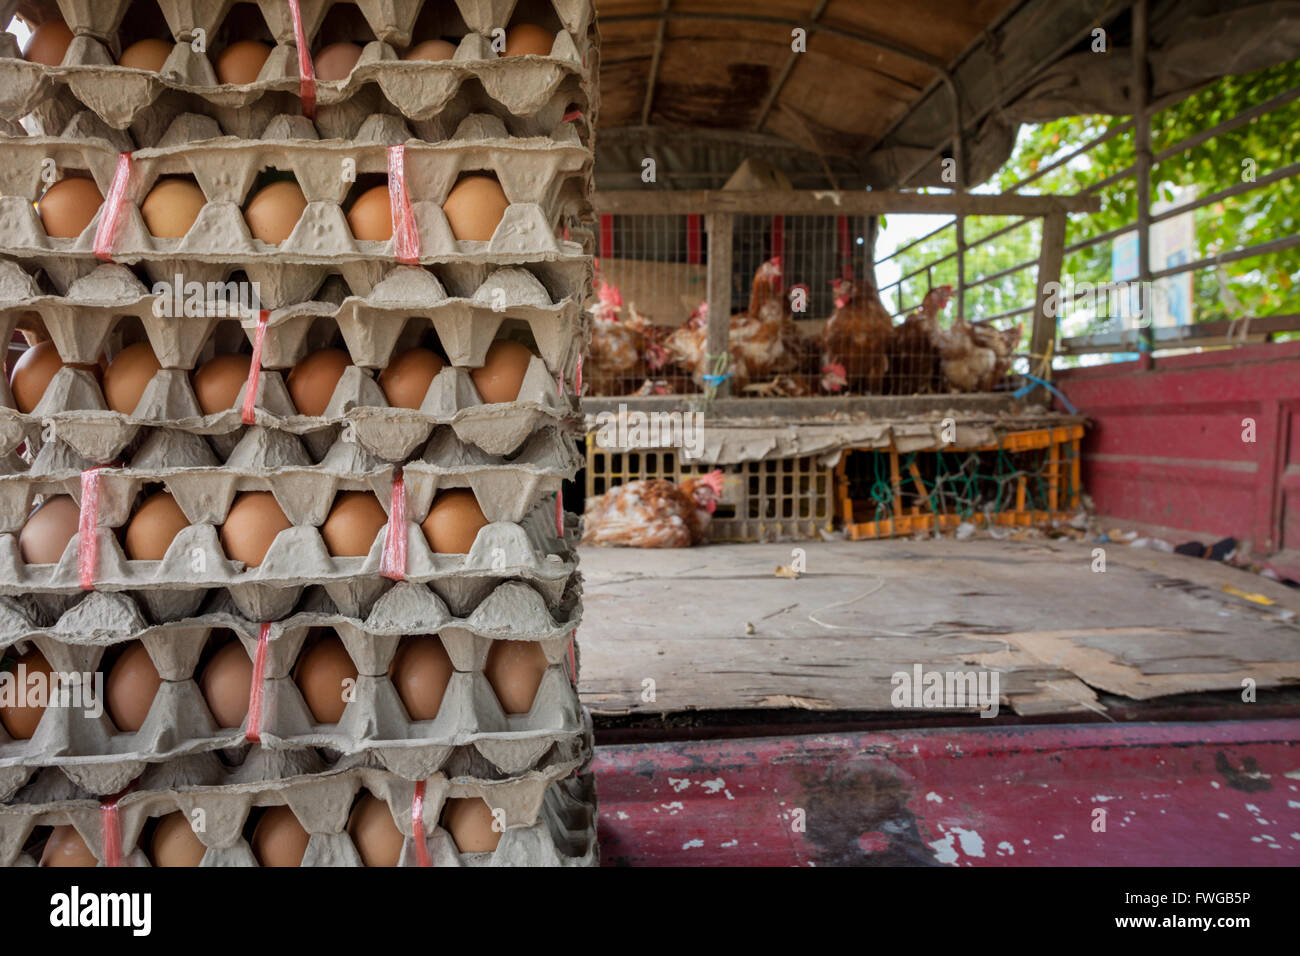 Scatole di uova sul retro di un autocarro con i polli vivi in gabbie. Pressione di stallo di mercato in città Pitas Sabah Borneo. Foto Stock